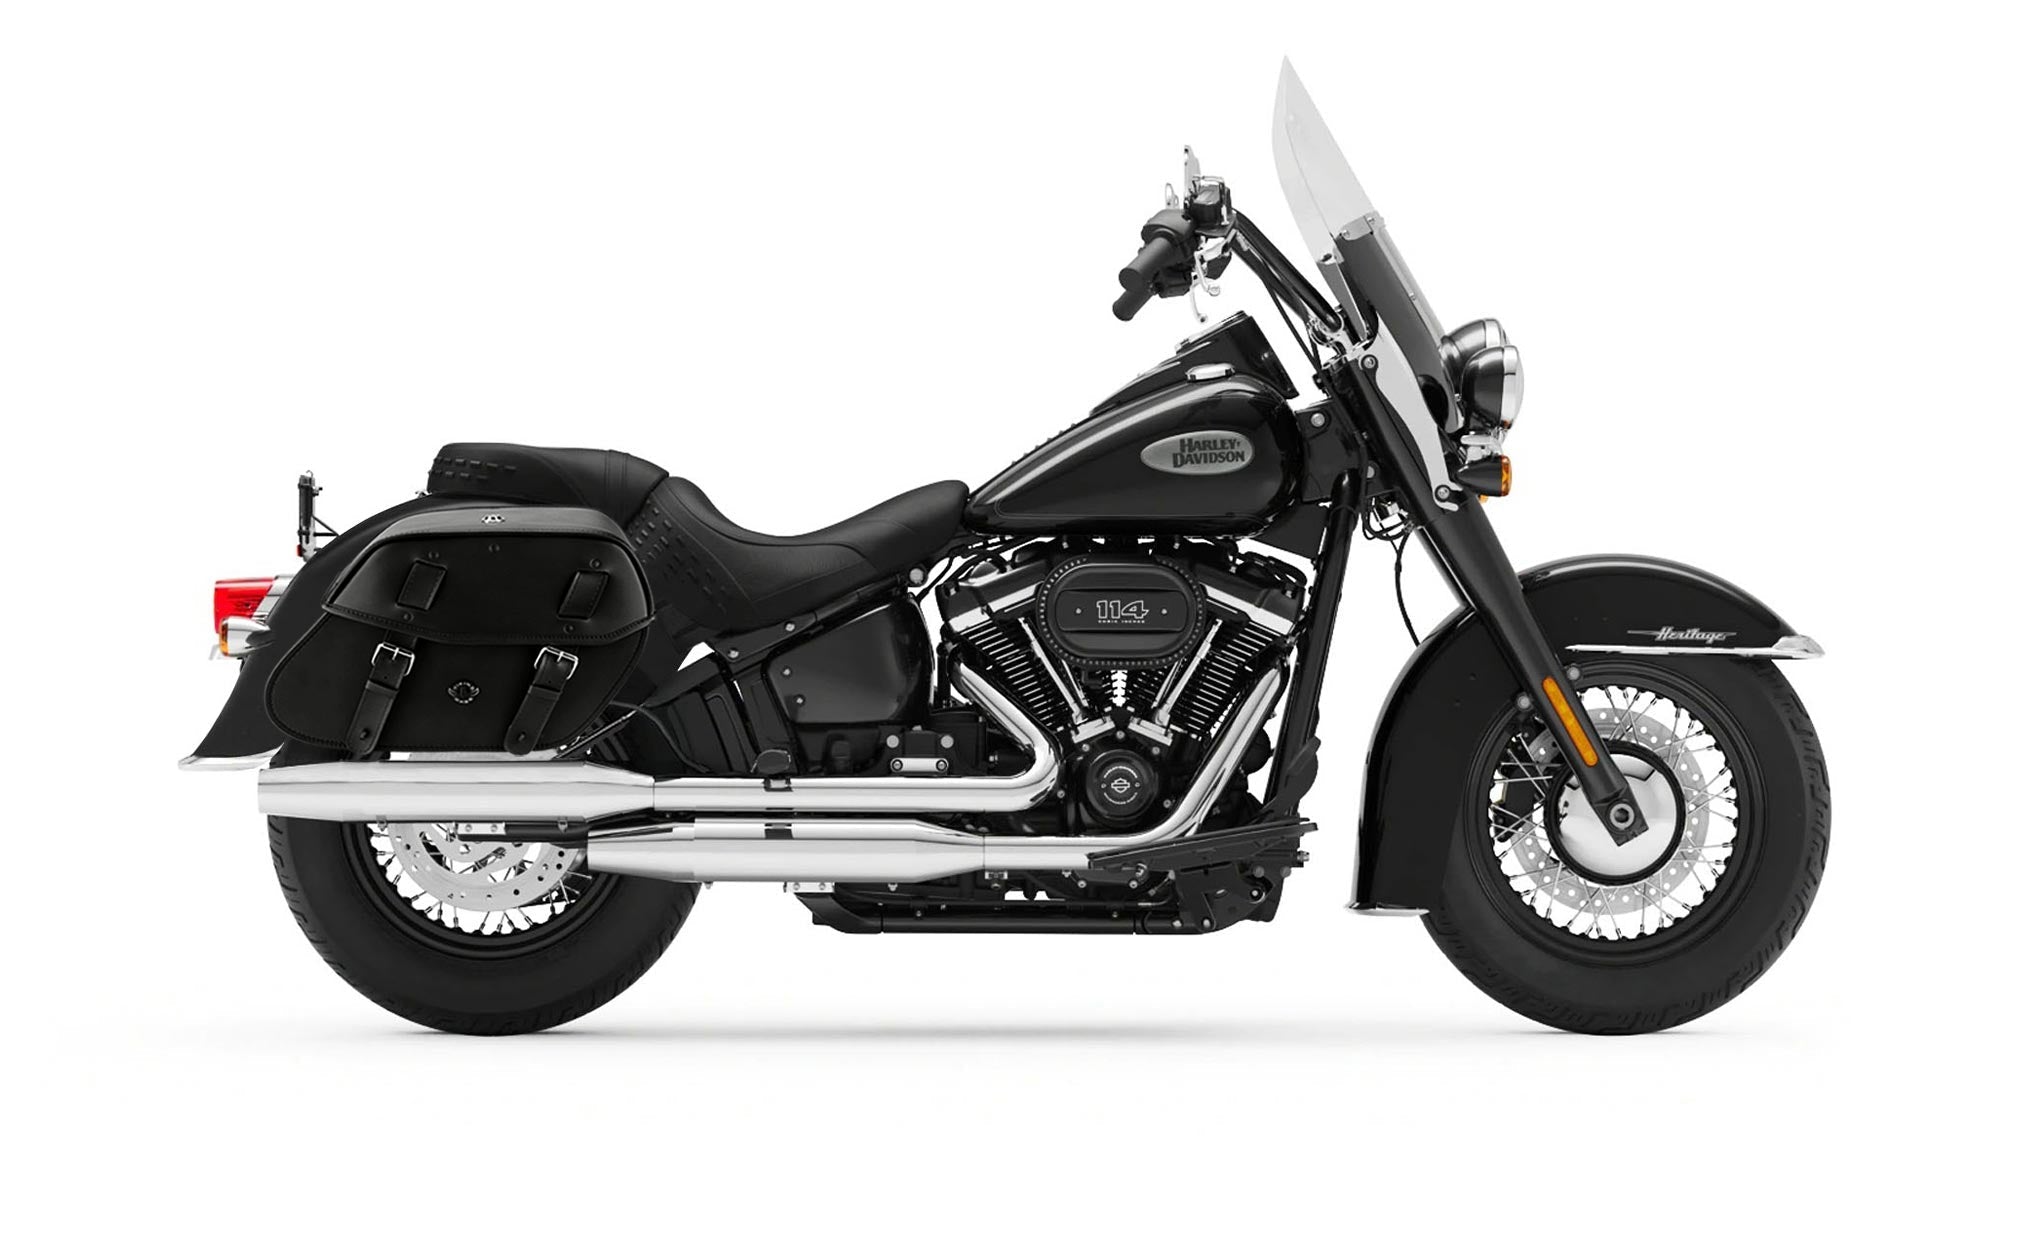 Viking Odin Large Leather Motorcycle Saddlebags For Harley Softail Heritage Flst I C Ci on Bike Photo @expand